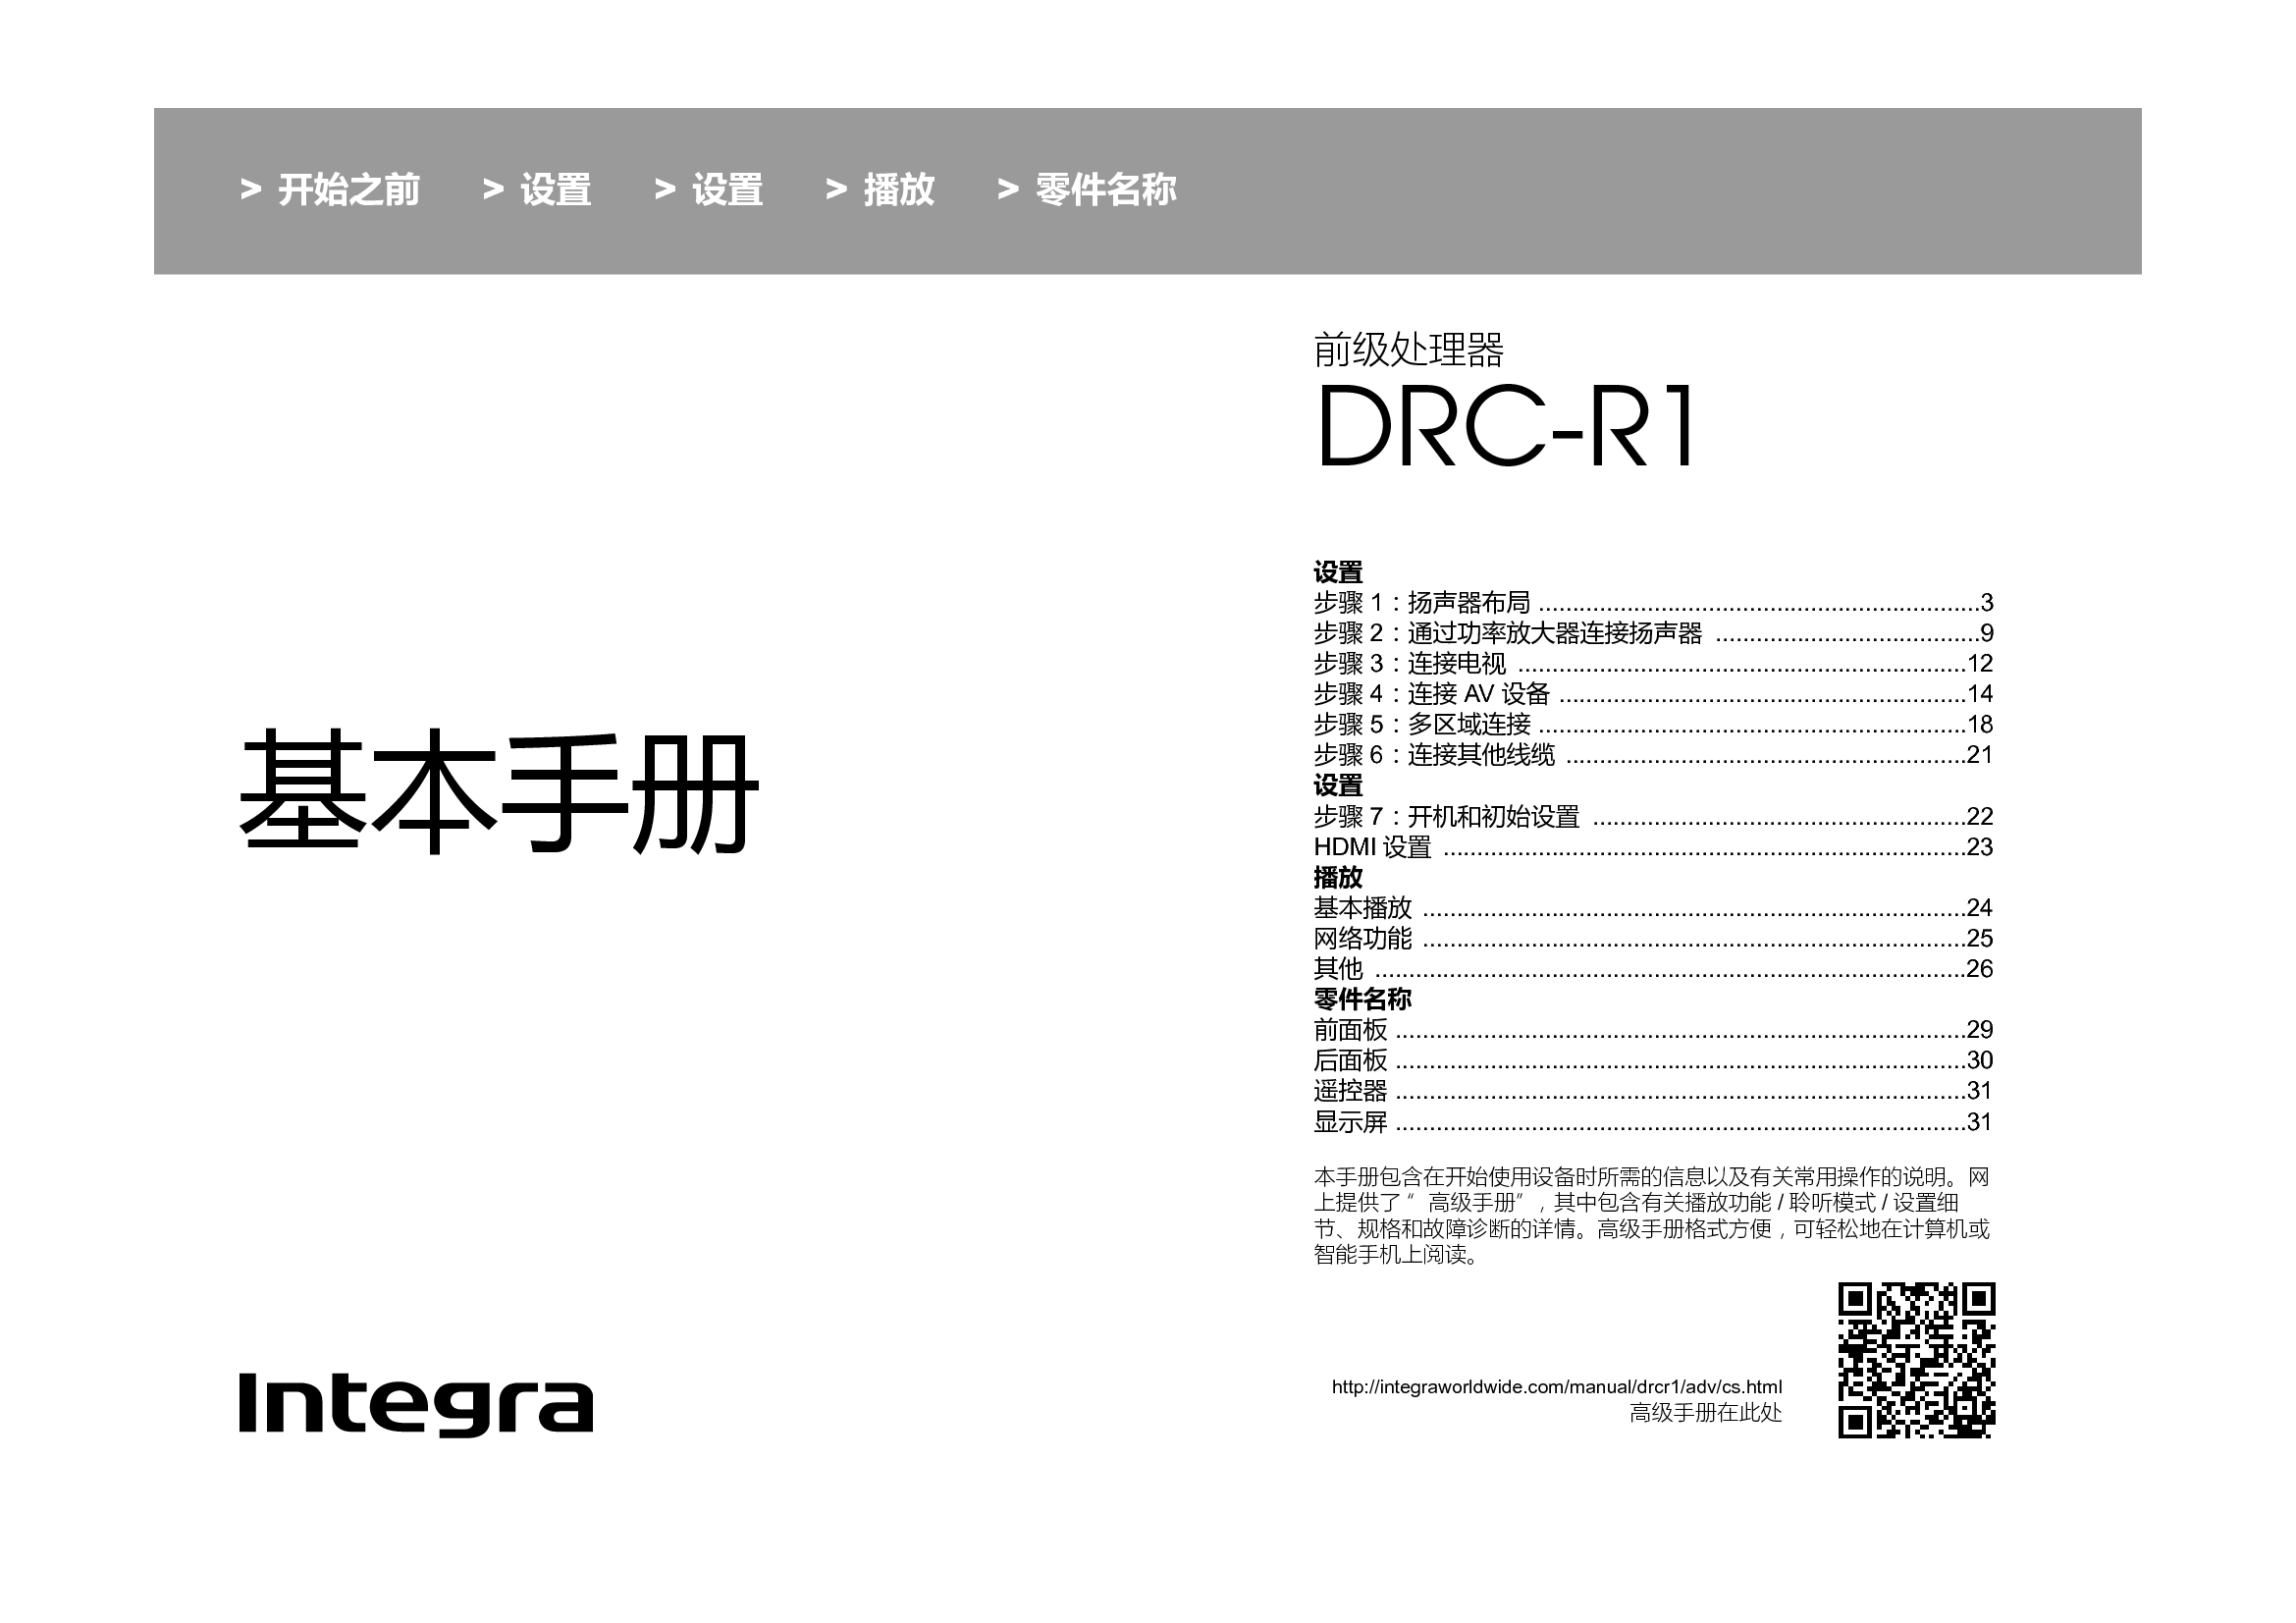 英桥 Integra DRC-R1 用户手册 封面